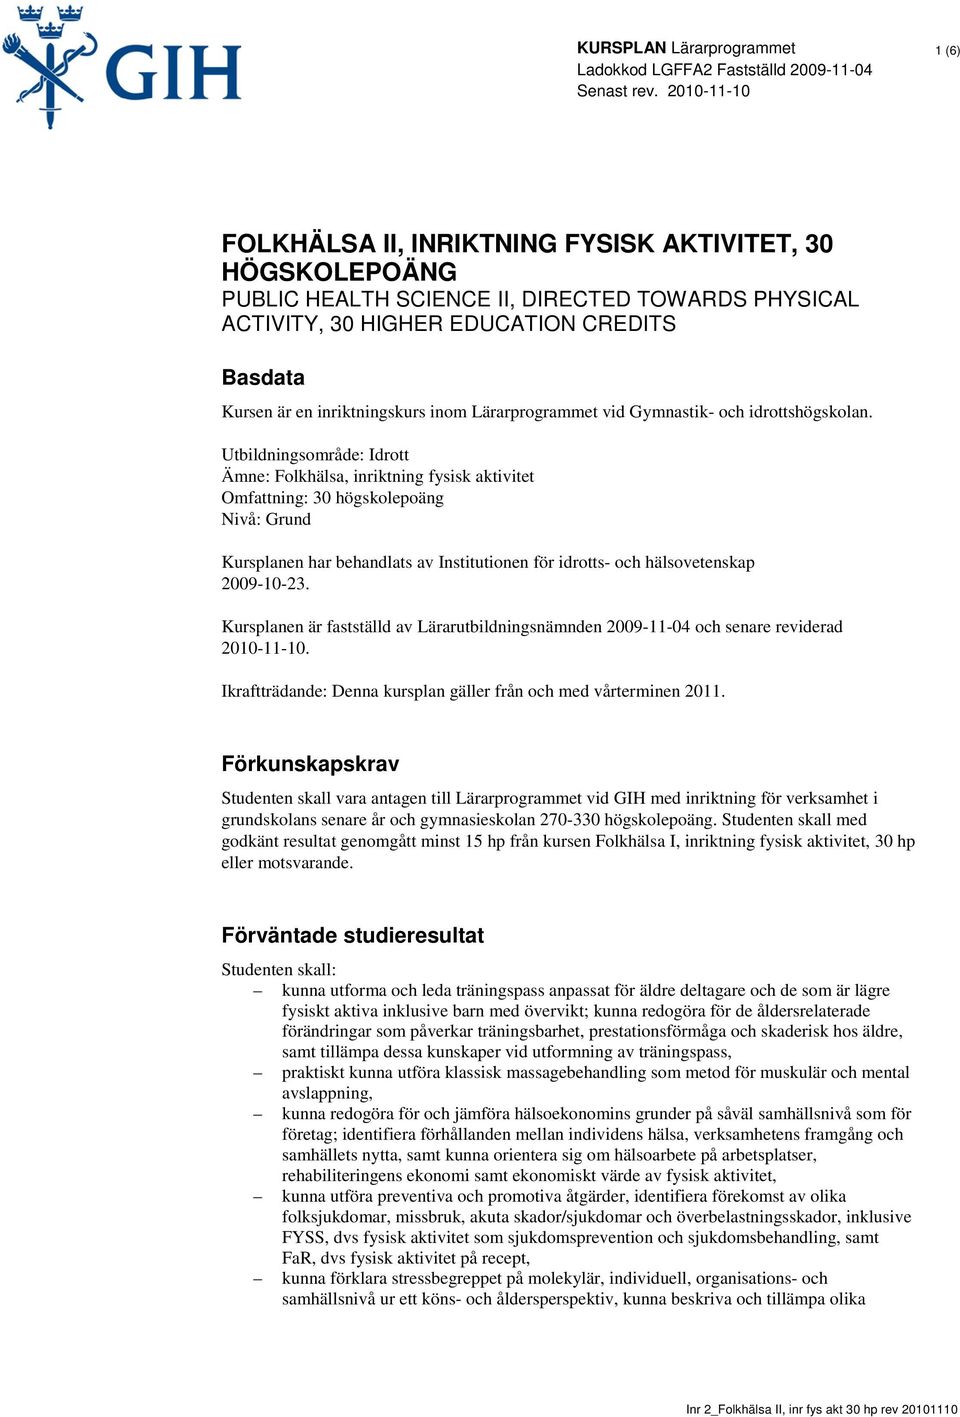 Utbildningsområde: Idrott Ämne: Folkhälsa, inriktning fysisk aktivitet Omfattning: 30 högskolepoäng Nivå: Grund Kursplanen har behandlats av Institutionen för idrotts- och hälsovetenskap 2009-10-23.